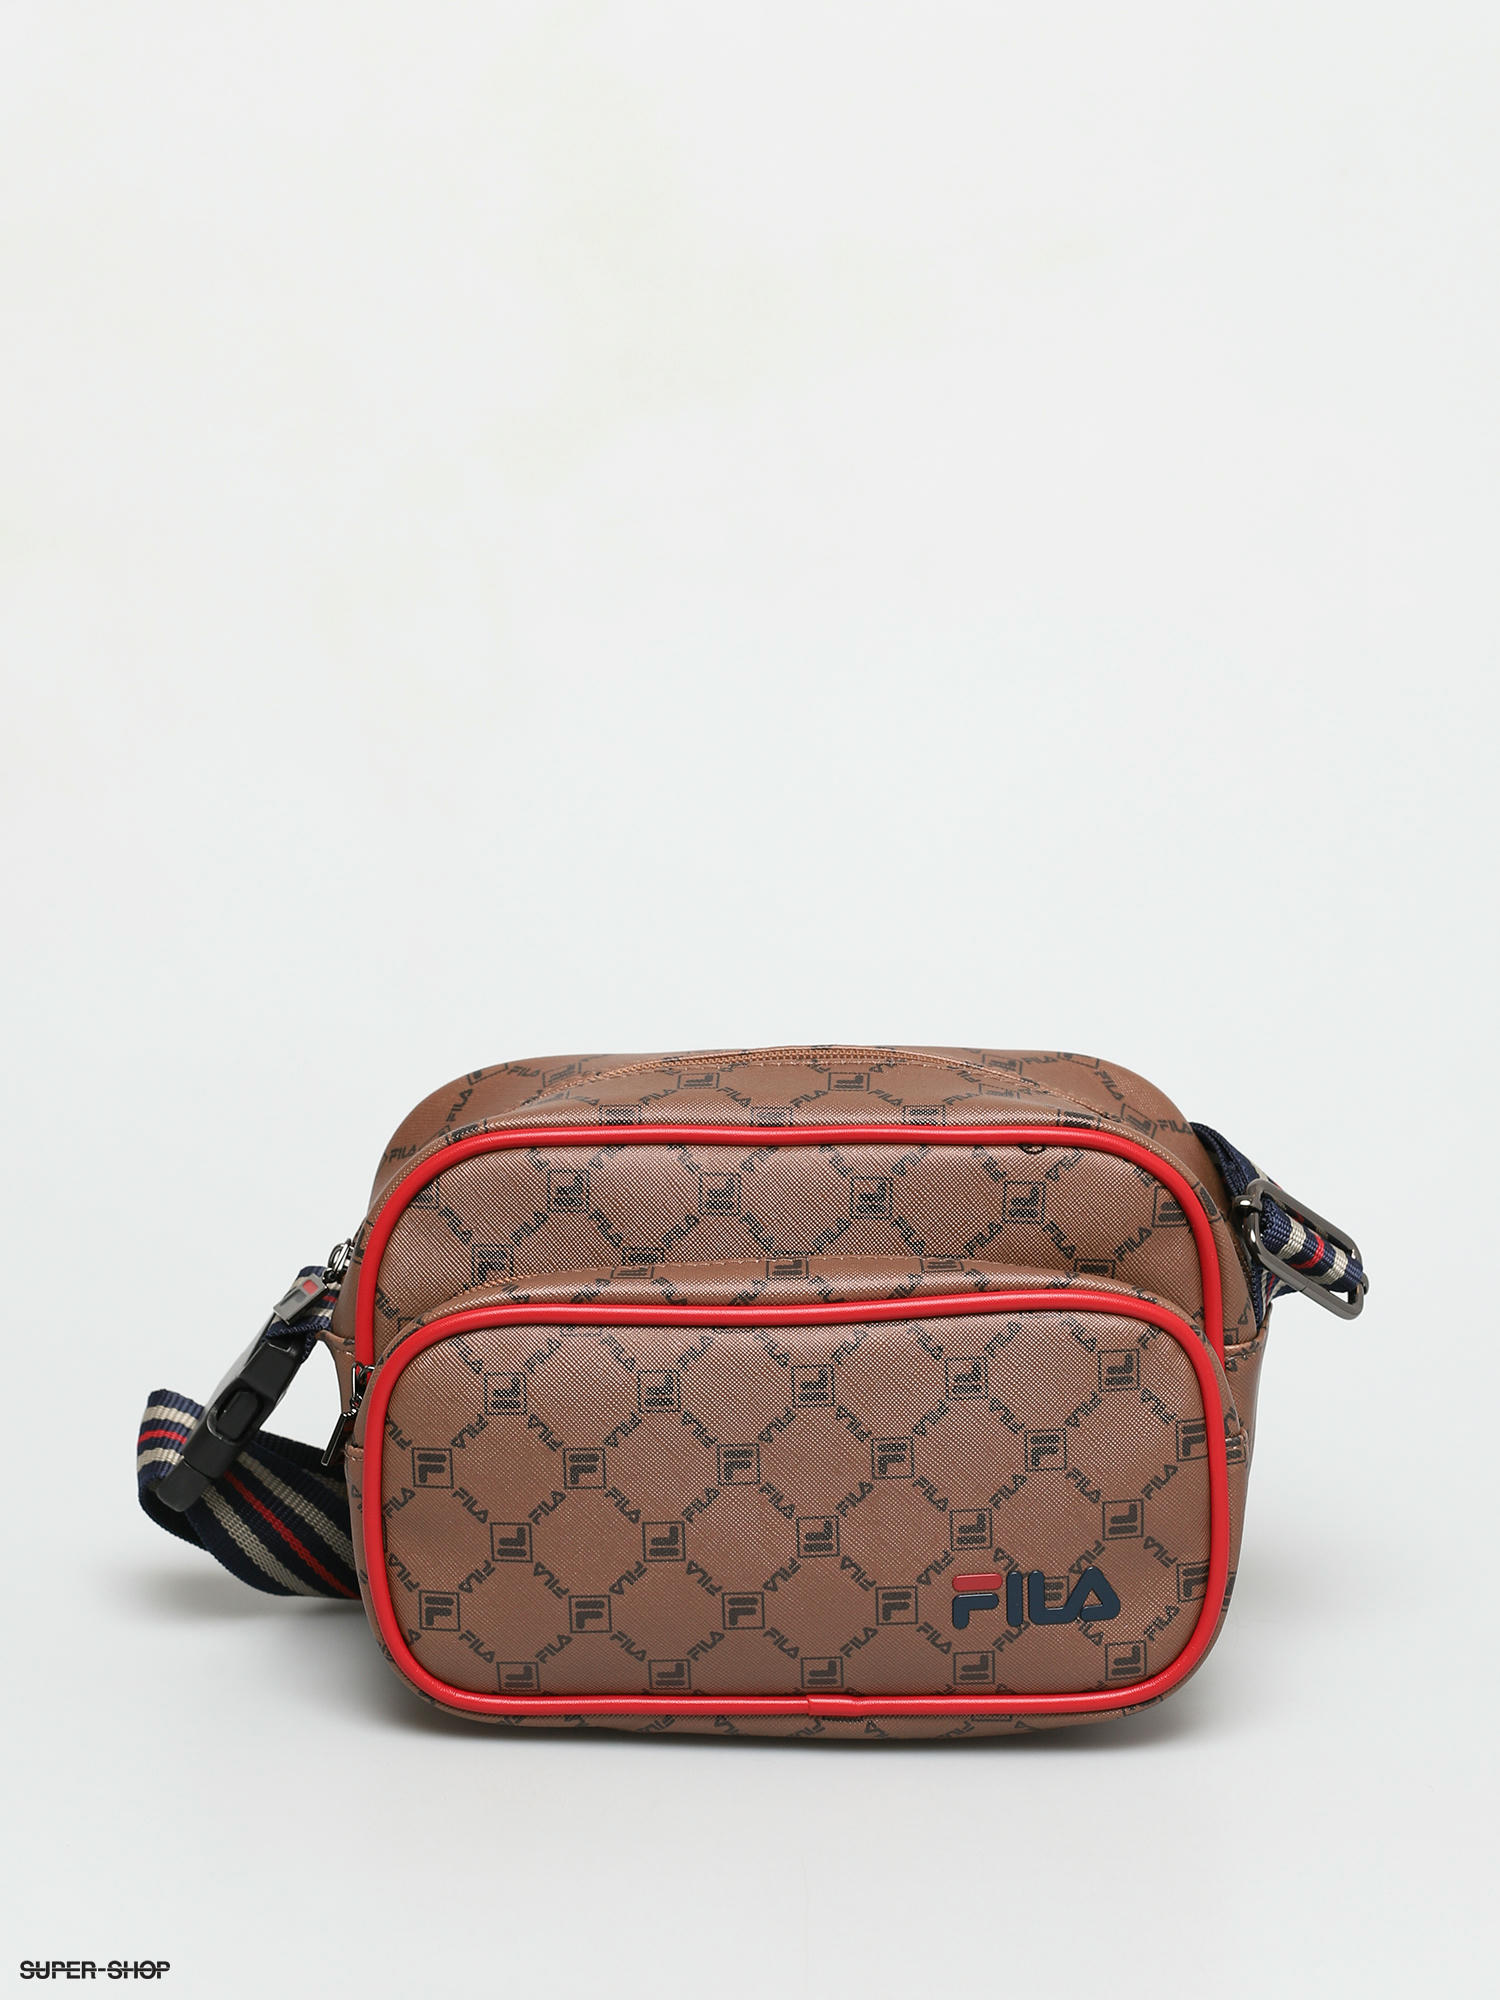 Fila the Premium padel bag